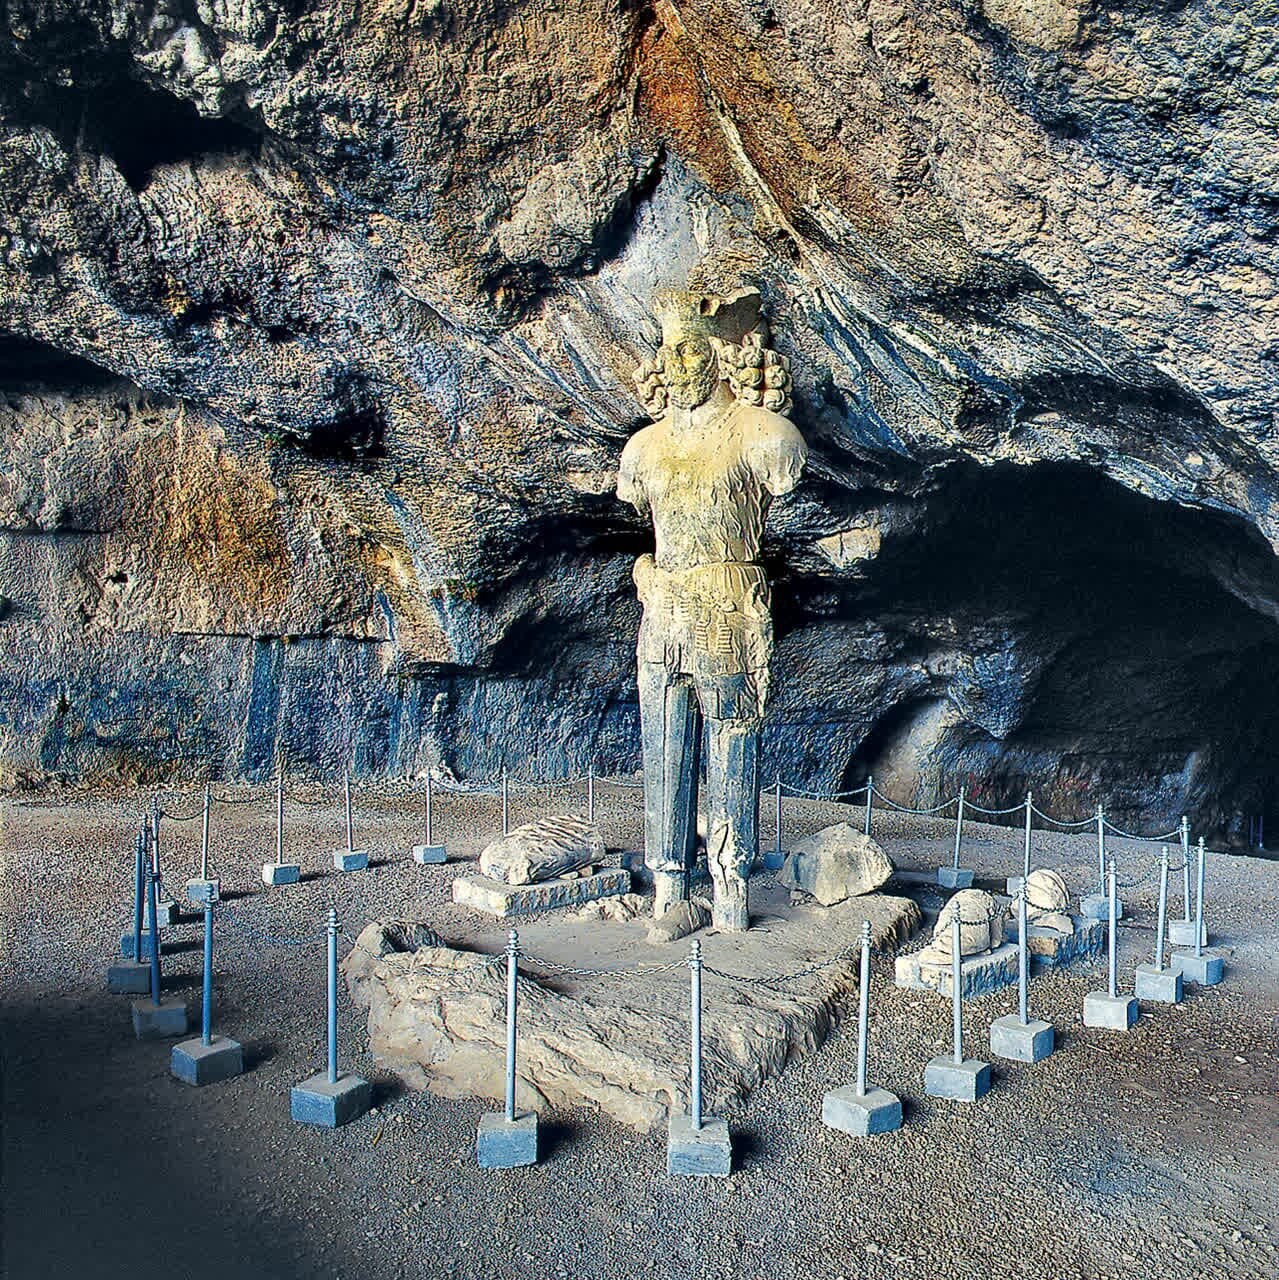 مجموعه غار شاپور و تنگ چوگان شهرستان کازرون ثبت ملی شد